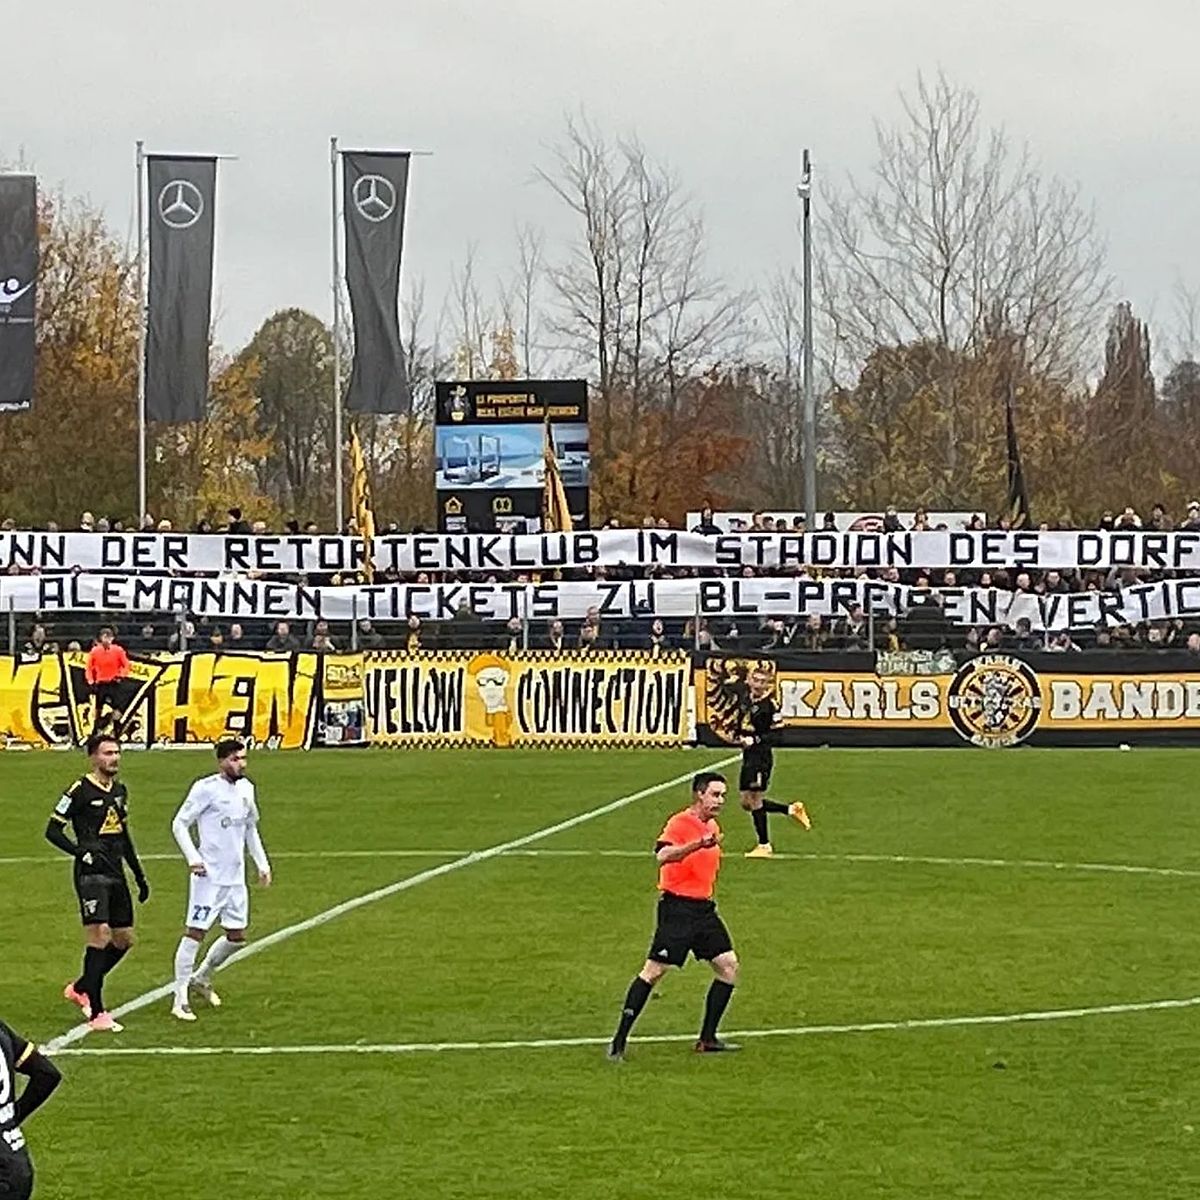 Aachen-Fans protestieren - Düren holt erneut Punkt gegen Alemannia